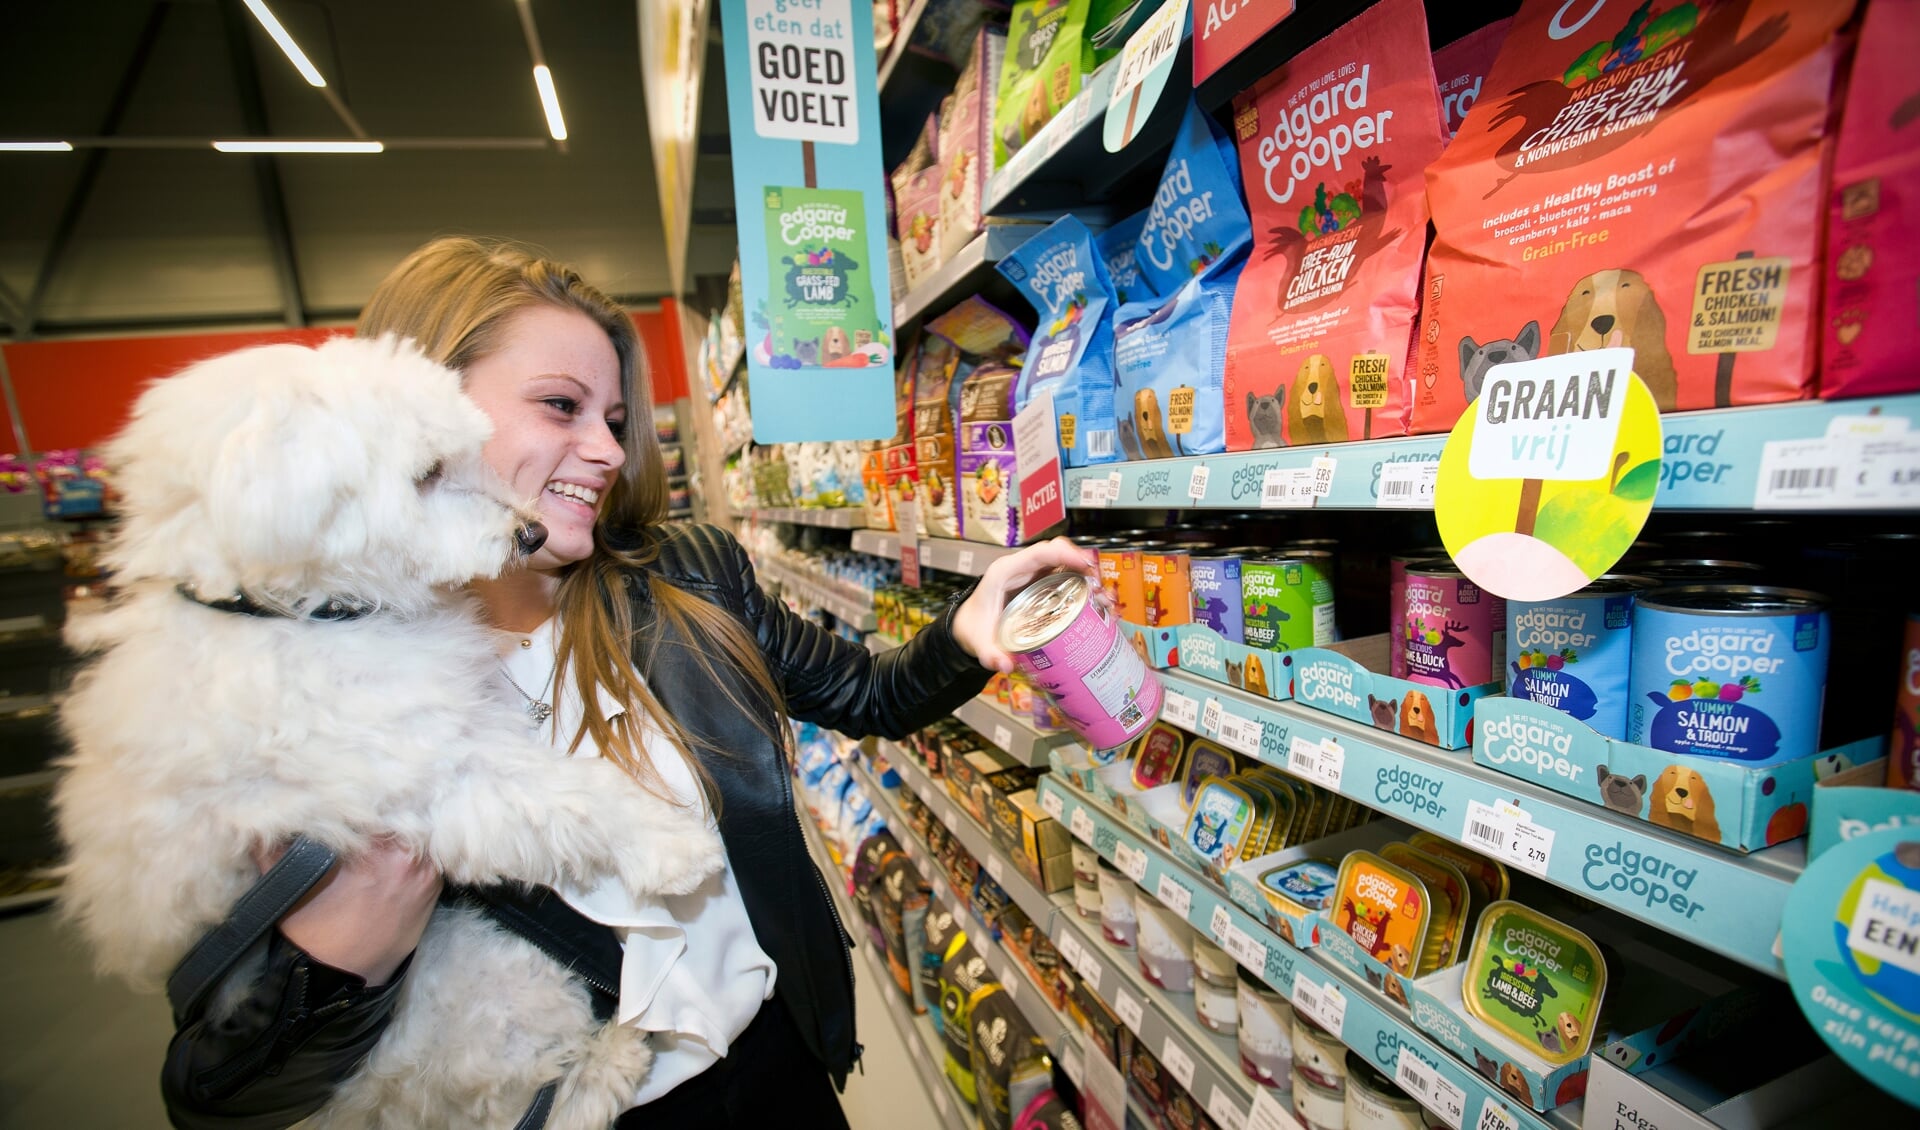 Pets opent winkel in Hoofddorp: 'Dierenwelzijn staat voorop' HCnieuws Nieuws uit regio Hoofddorp